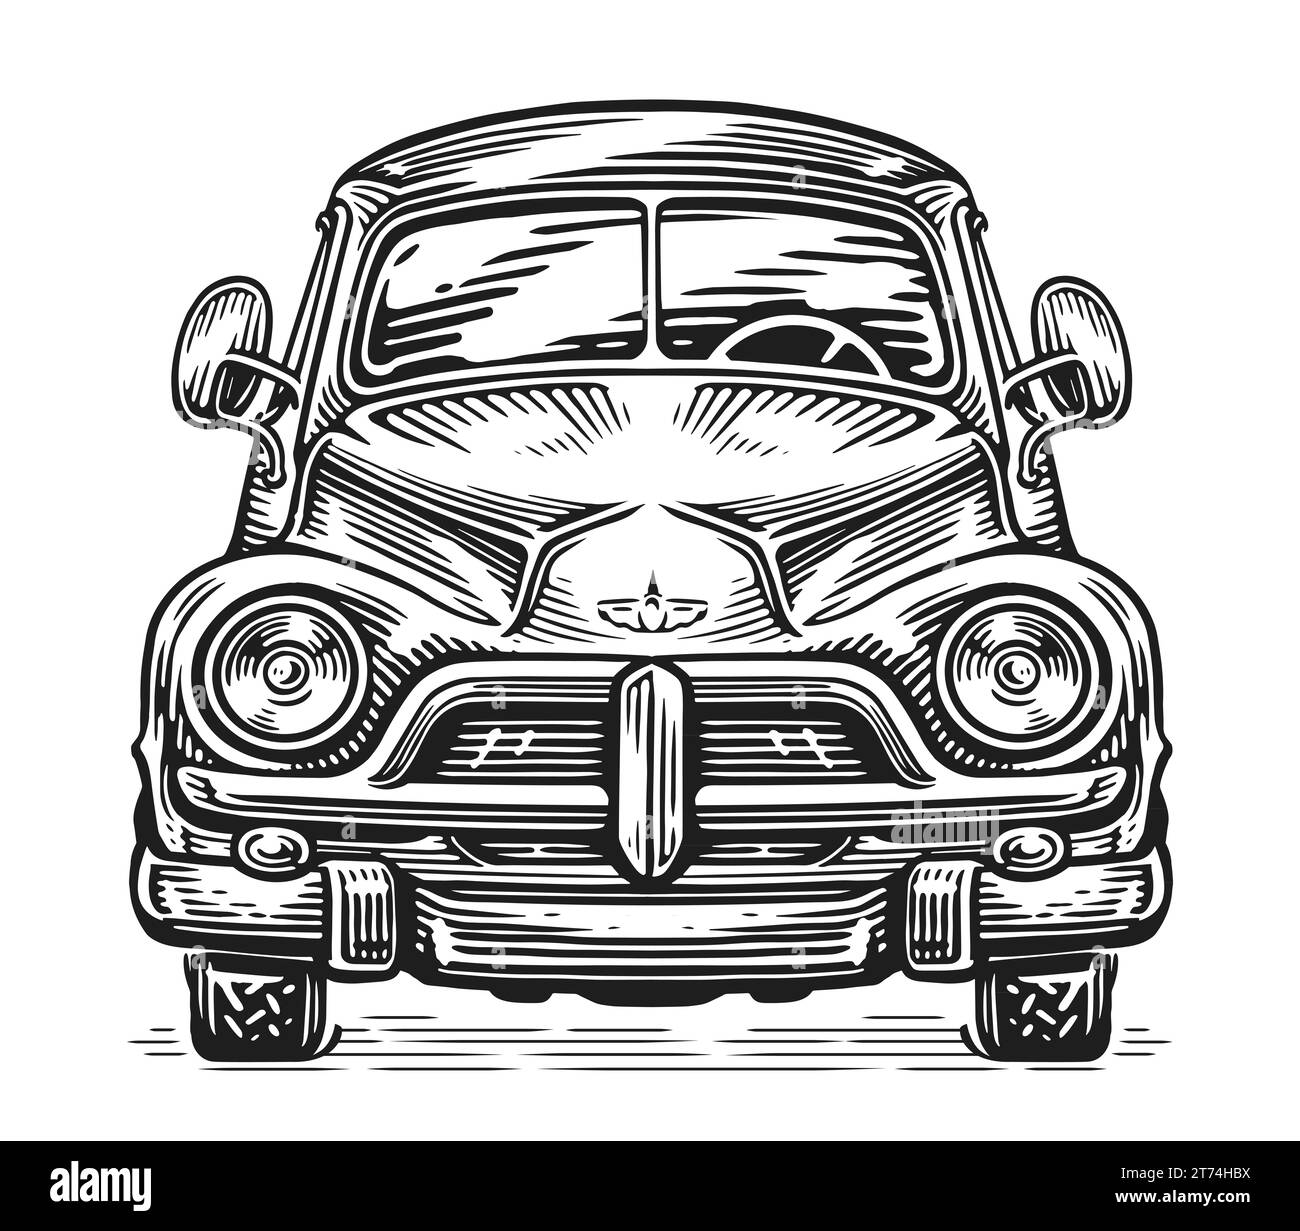 Vue de face d'une voiture rétro, illustration en noir et blanc. Mode de transport routier vintage Banque D'Images